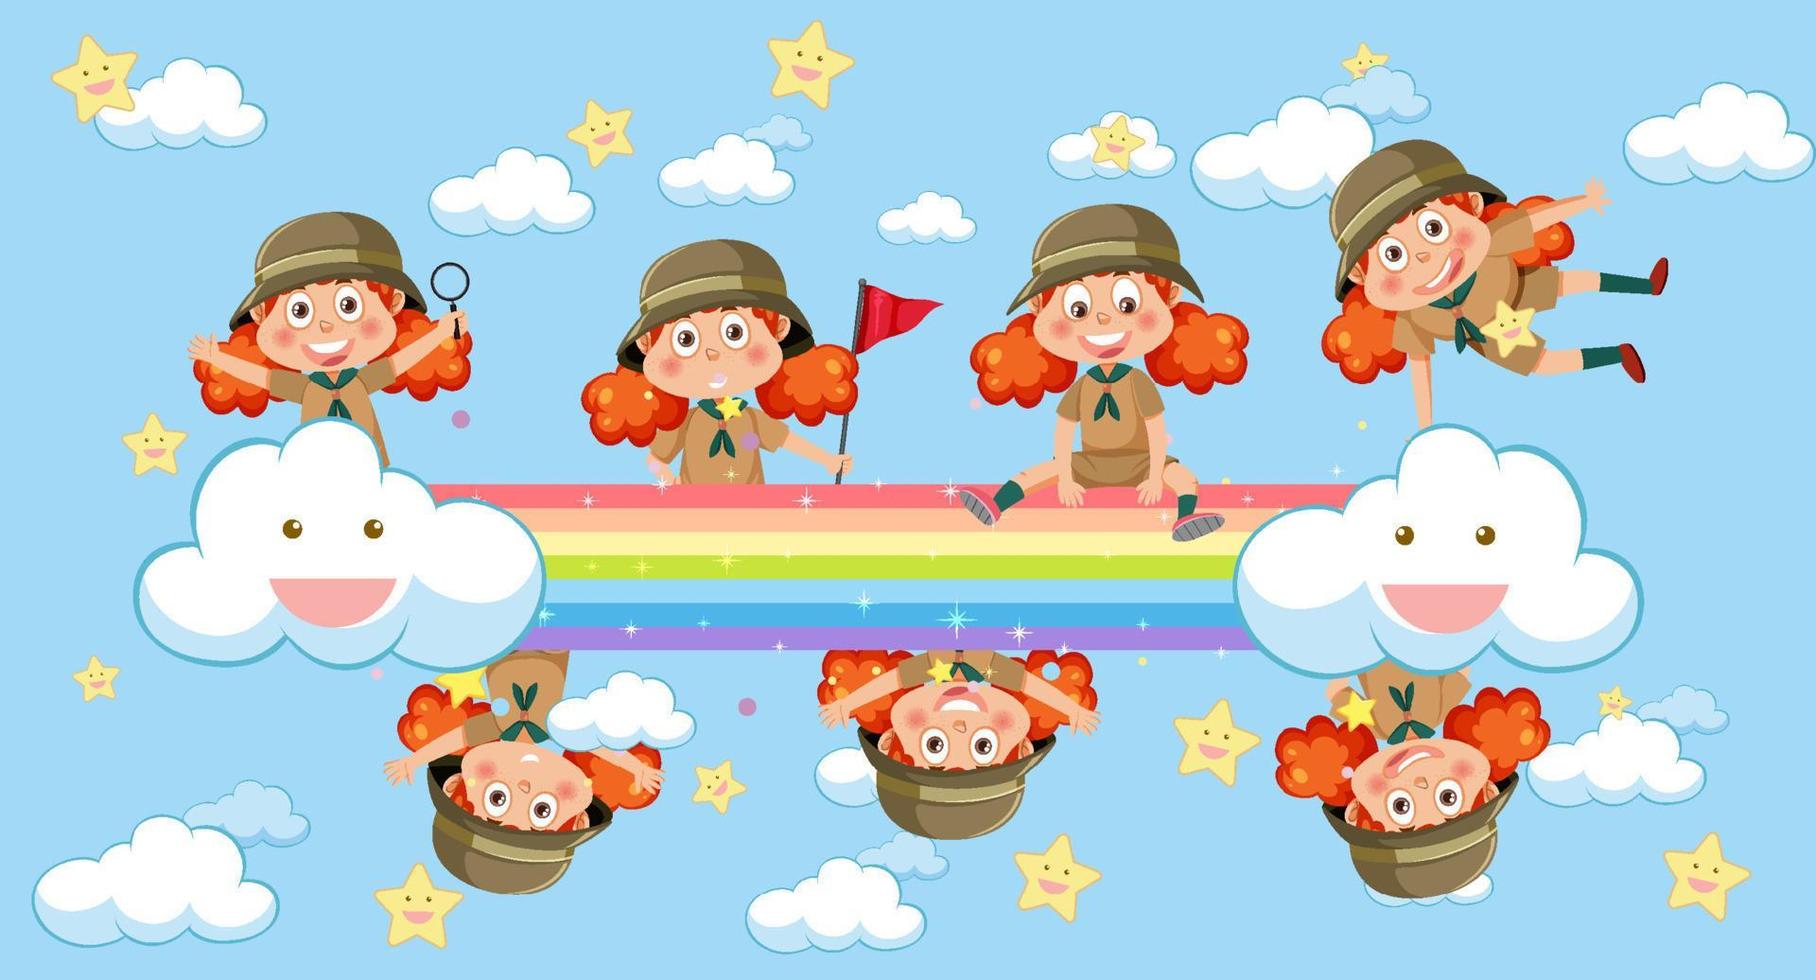 niños felices en el cielo con arco iris vector